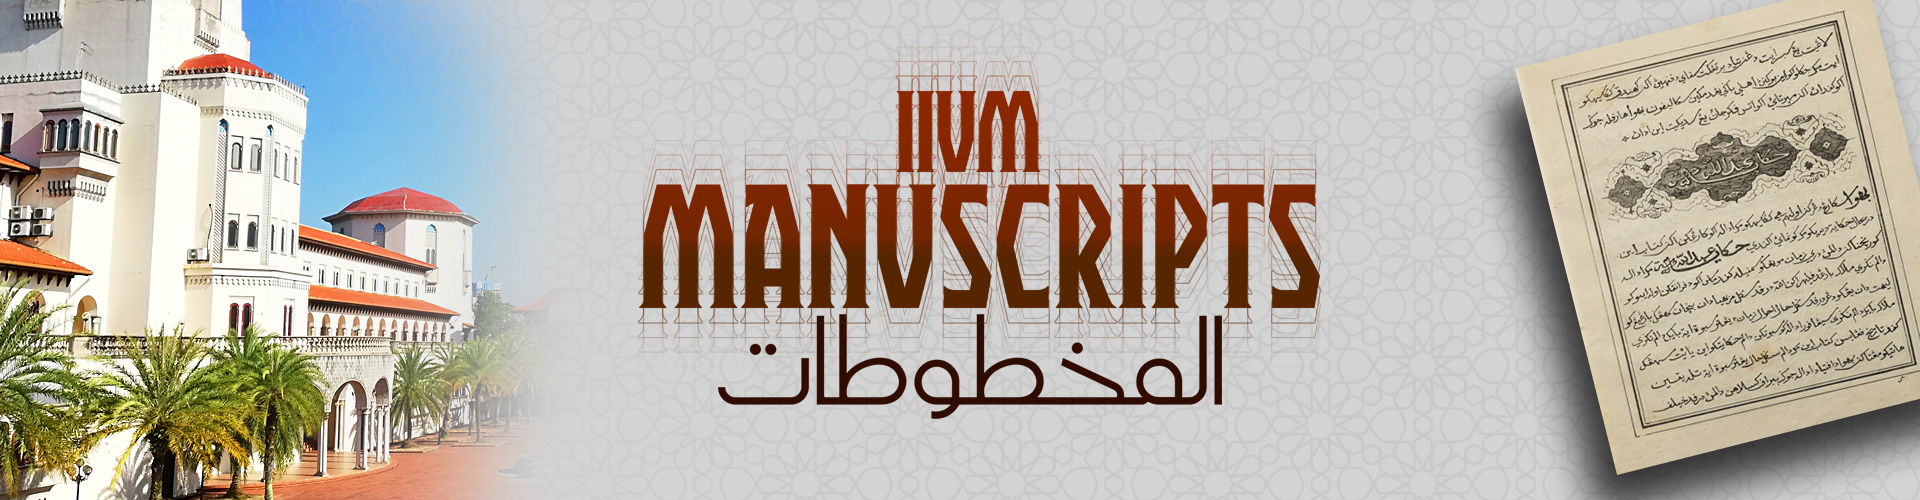 iium-lib-manuscripts.jpg